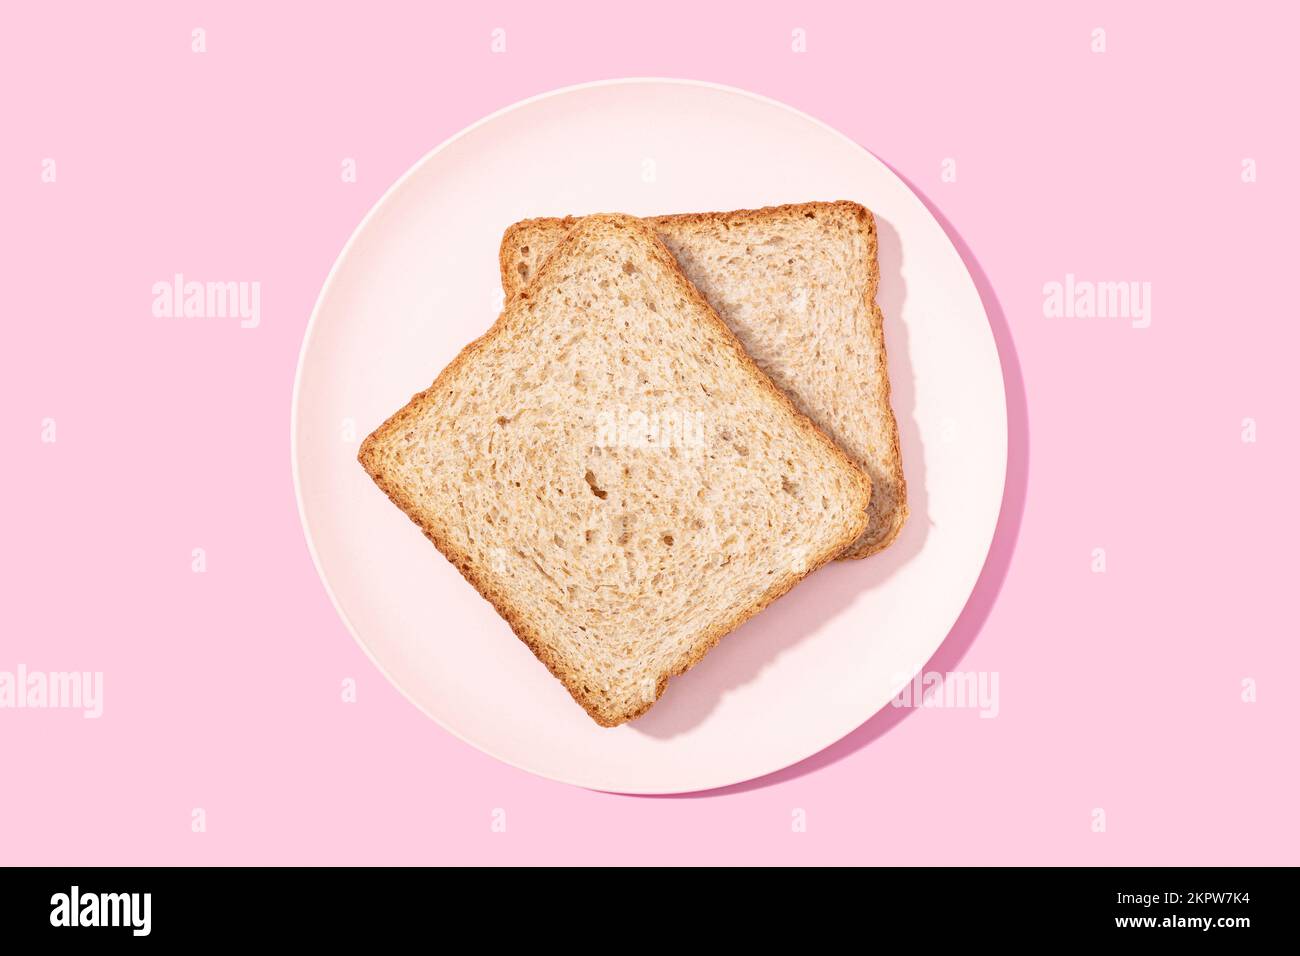 Vollkorn-Sandwich-Brot auf einem Teller mit pinkfarbenem Hintergrund. Flach verlegt Stockfoto